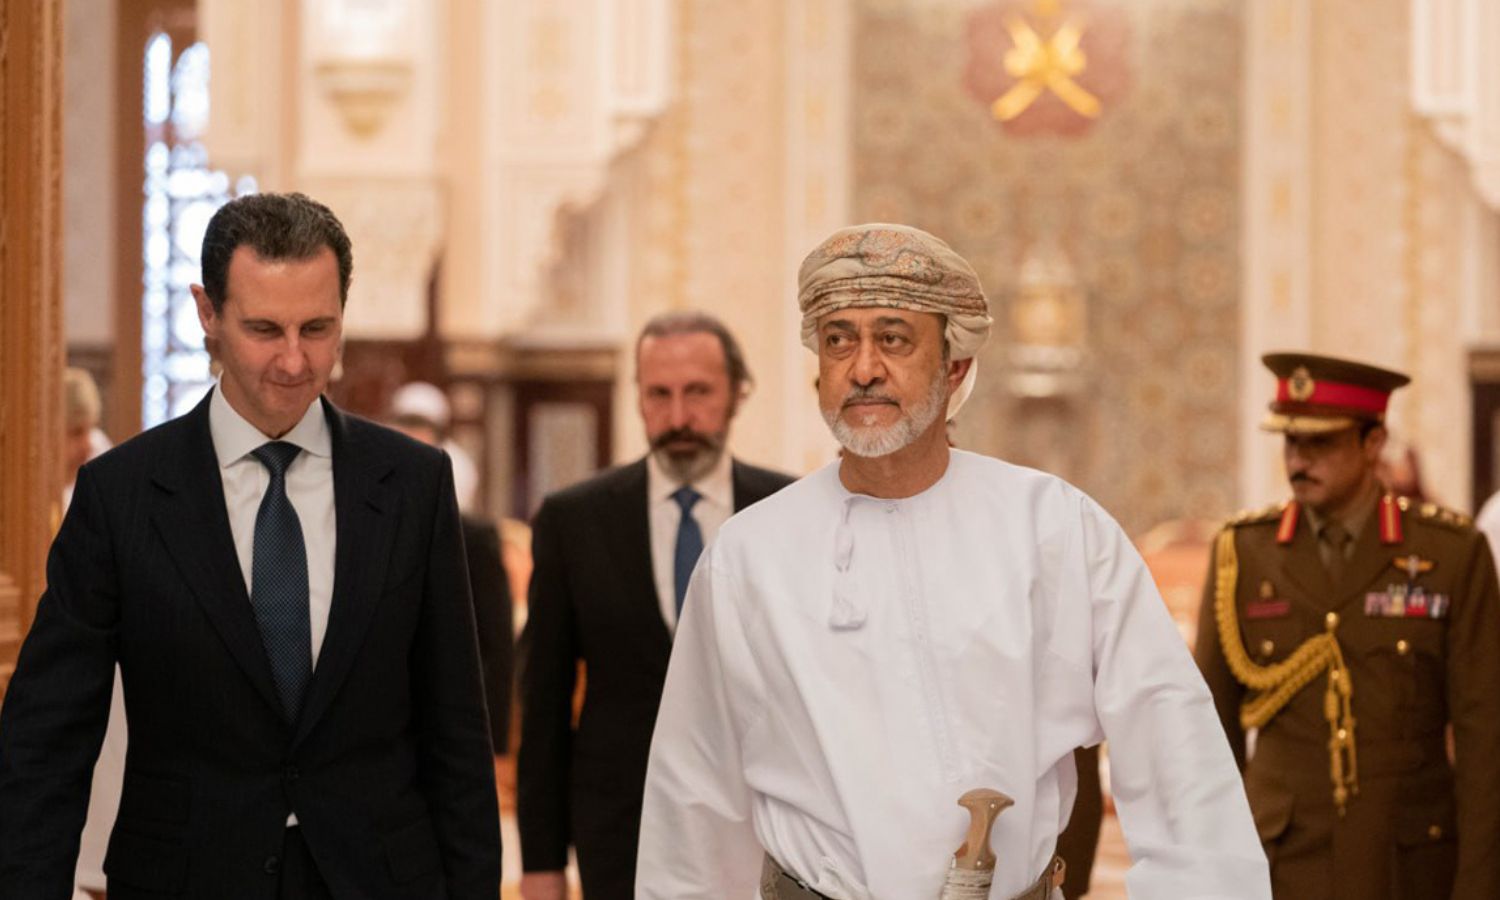 سلطان عمان هيثم بن طارق آل سعيد يستقبل رئيس النظام السوري بشار الأسد في مسقط- 20 شباط 2023 (سانا)